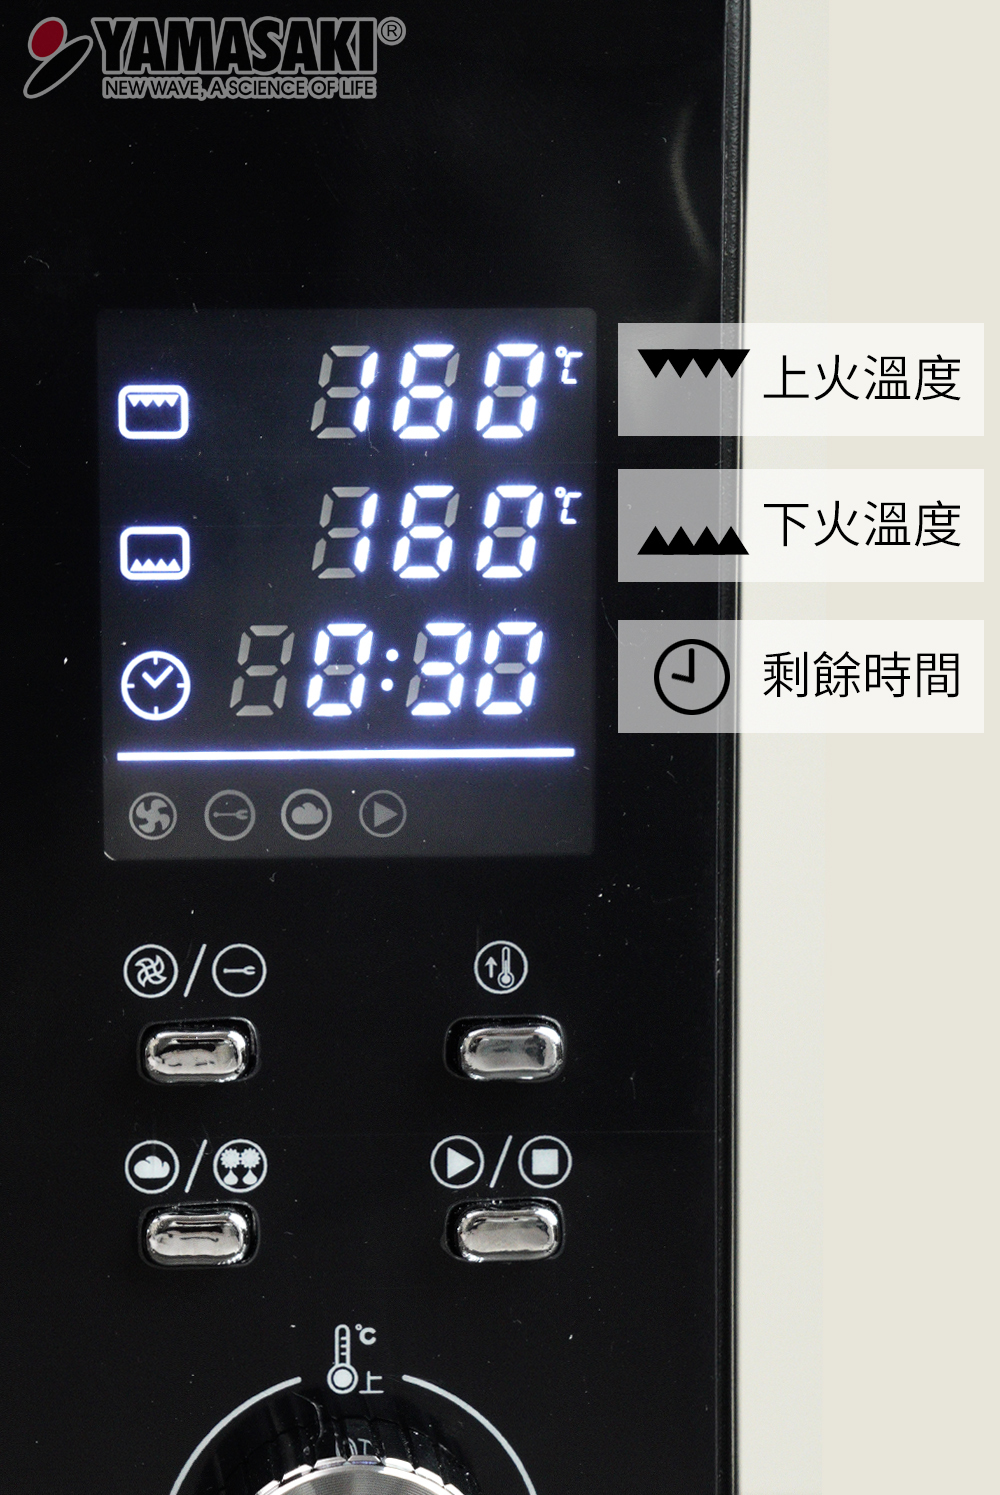 山崎43L微電腦烤箱SK-4680M螢幕顯示說明